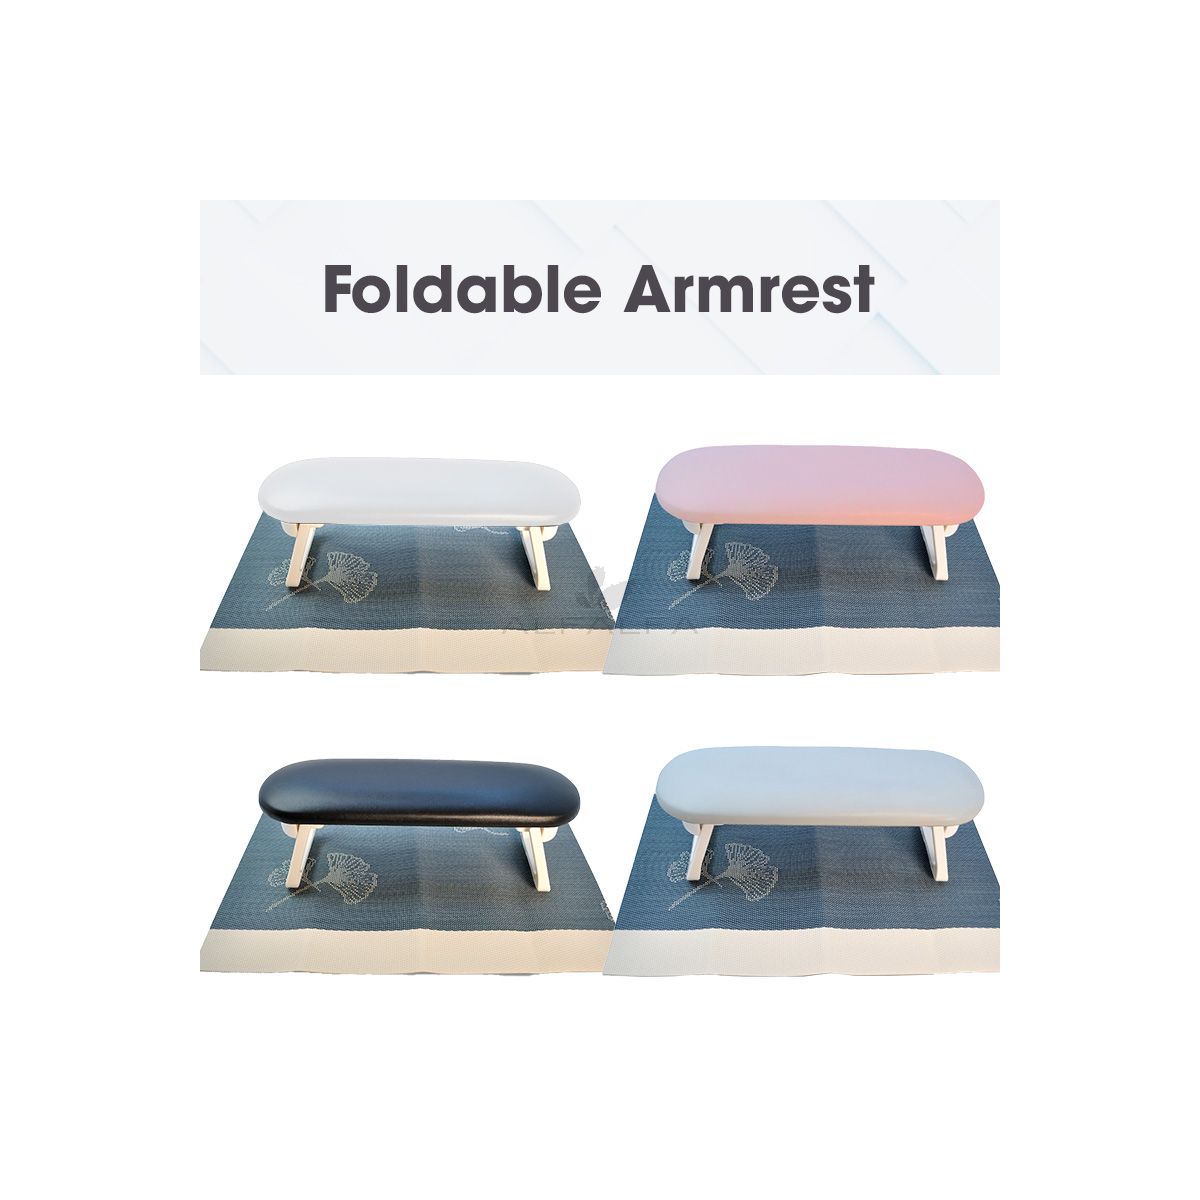 Foldable Armrest